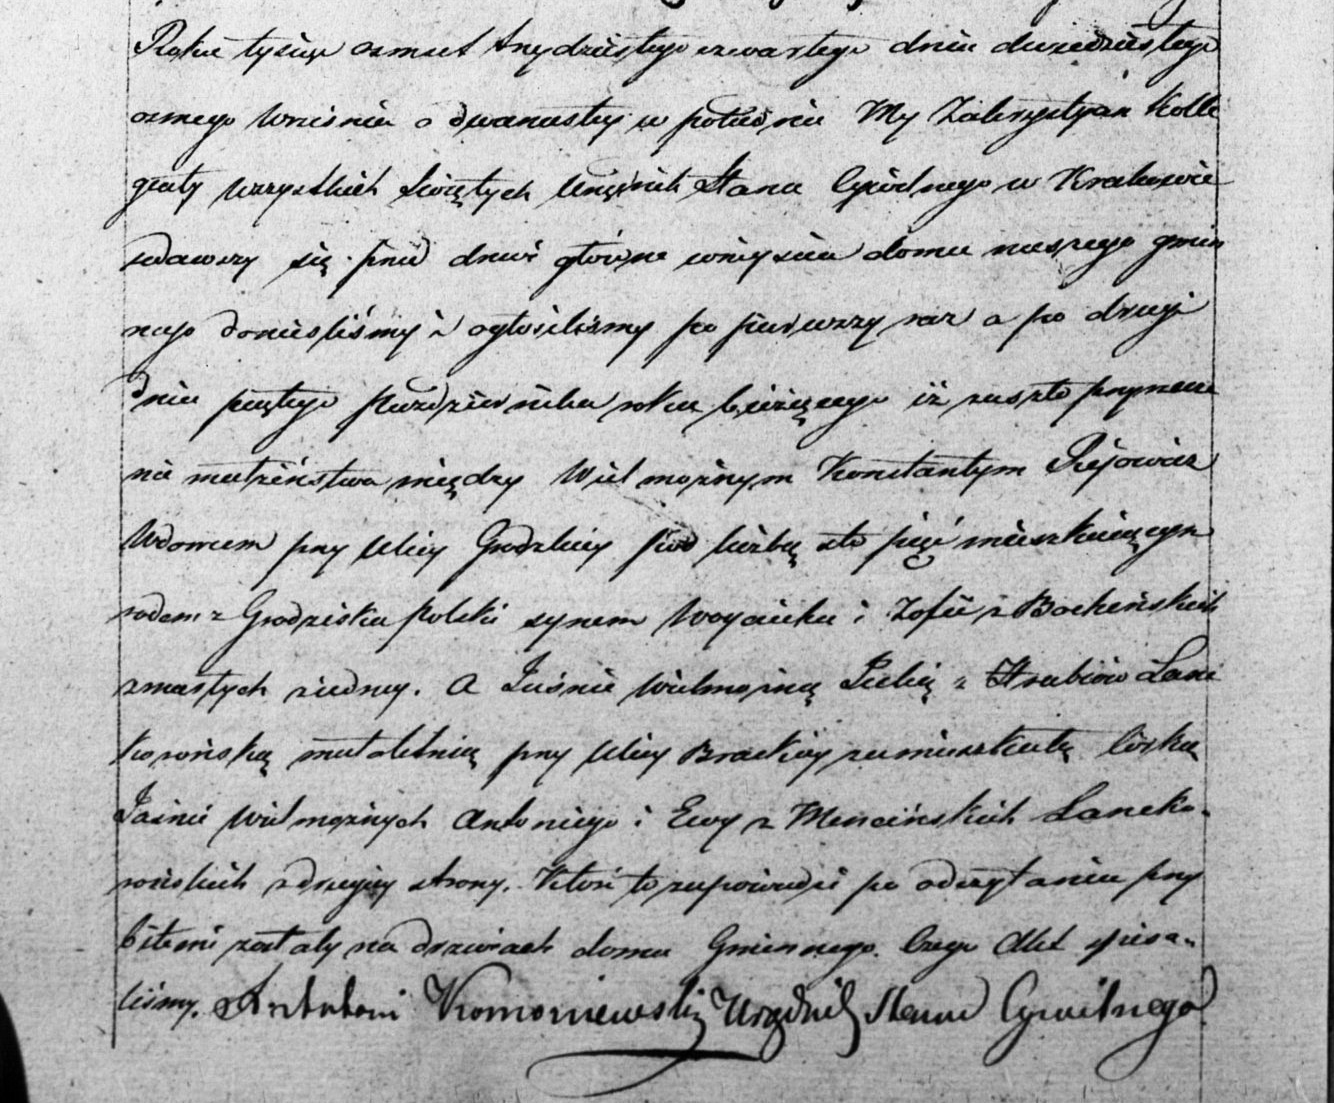 Akt zapowiedzi I i II Konstanty Rajowicz & Julia hr. Lanckorońska z dnia 28.09. oraz 05.10.1834 r.